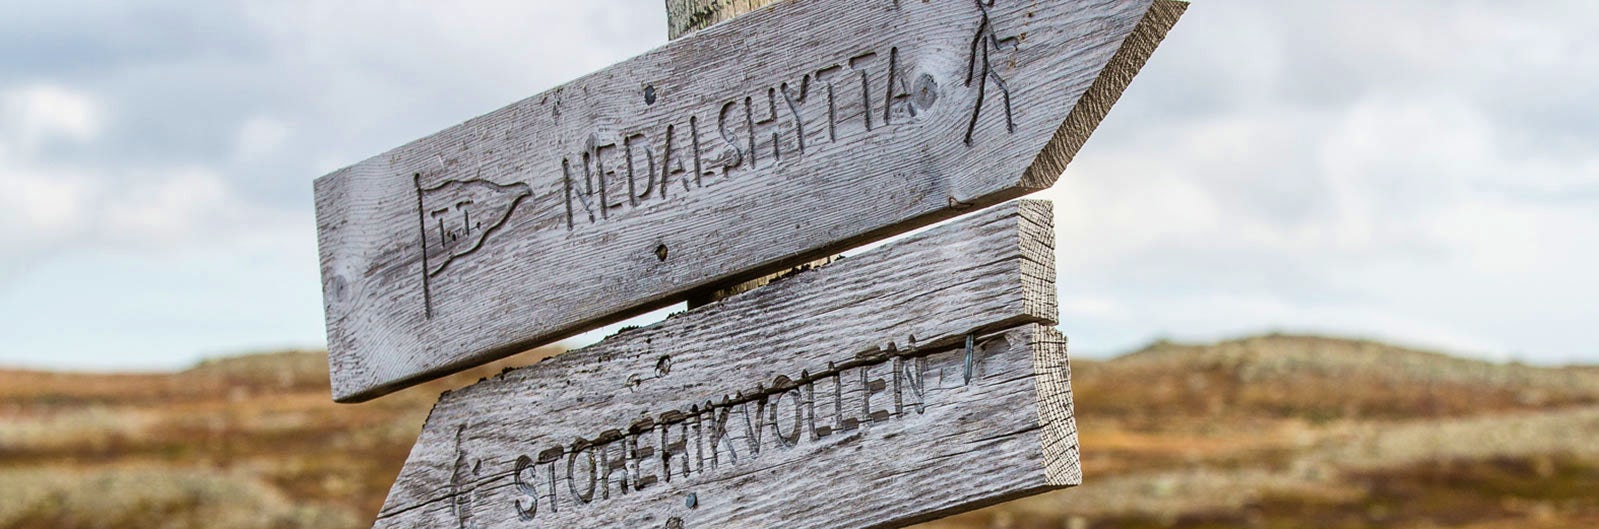 Wooden sign in Storerikvollen